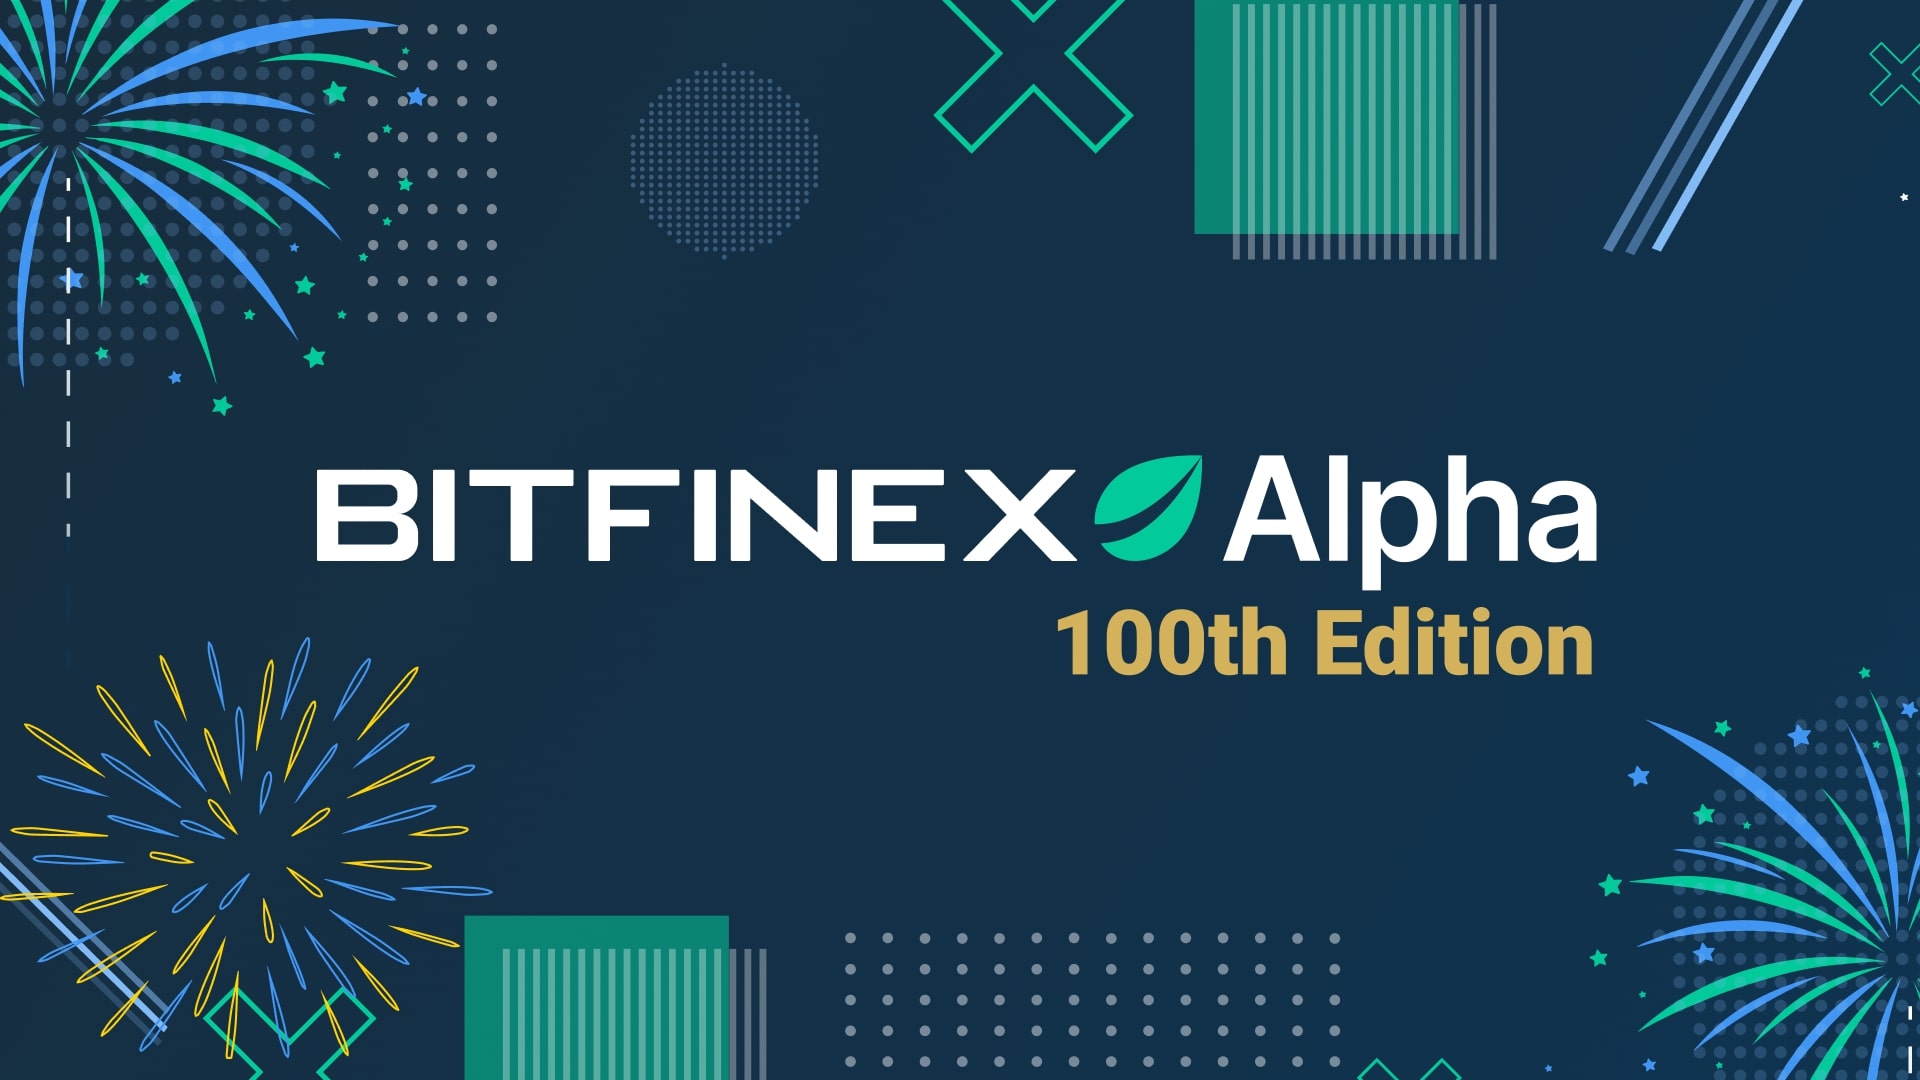 Bitfinex’in Alpha Raporu serisi 100. sayısına ulaştı: Halving yaklaşırken Bitcoin arzında daralma yaşanıyor